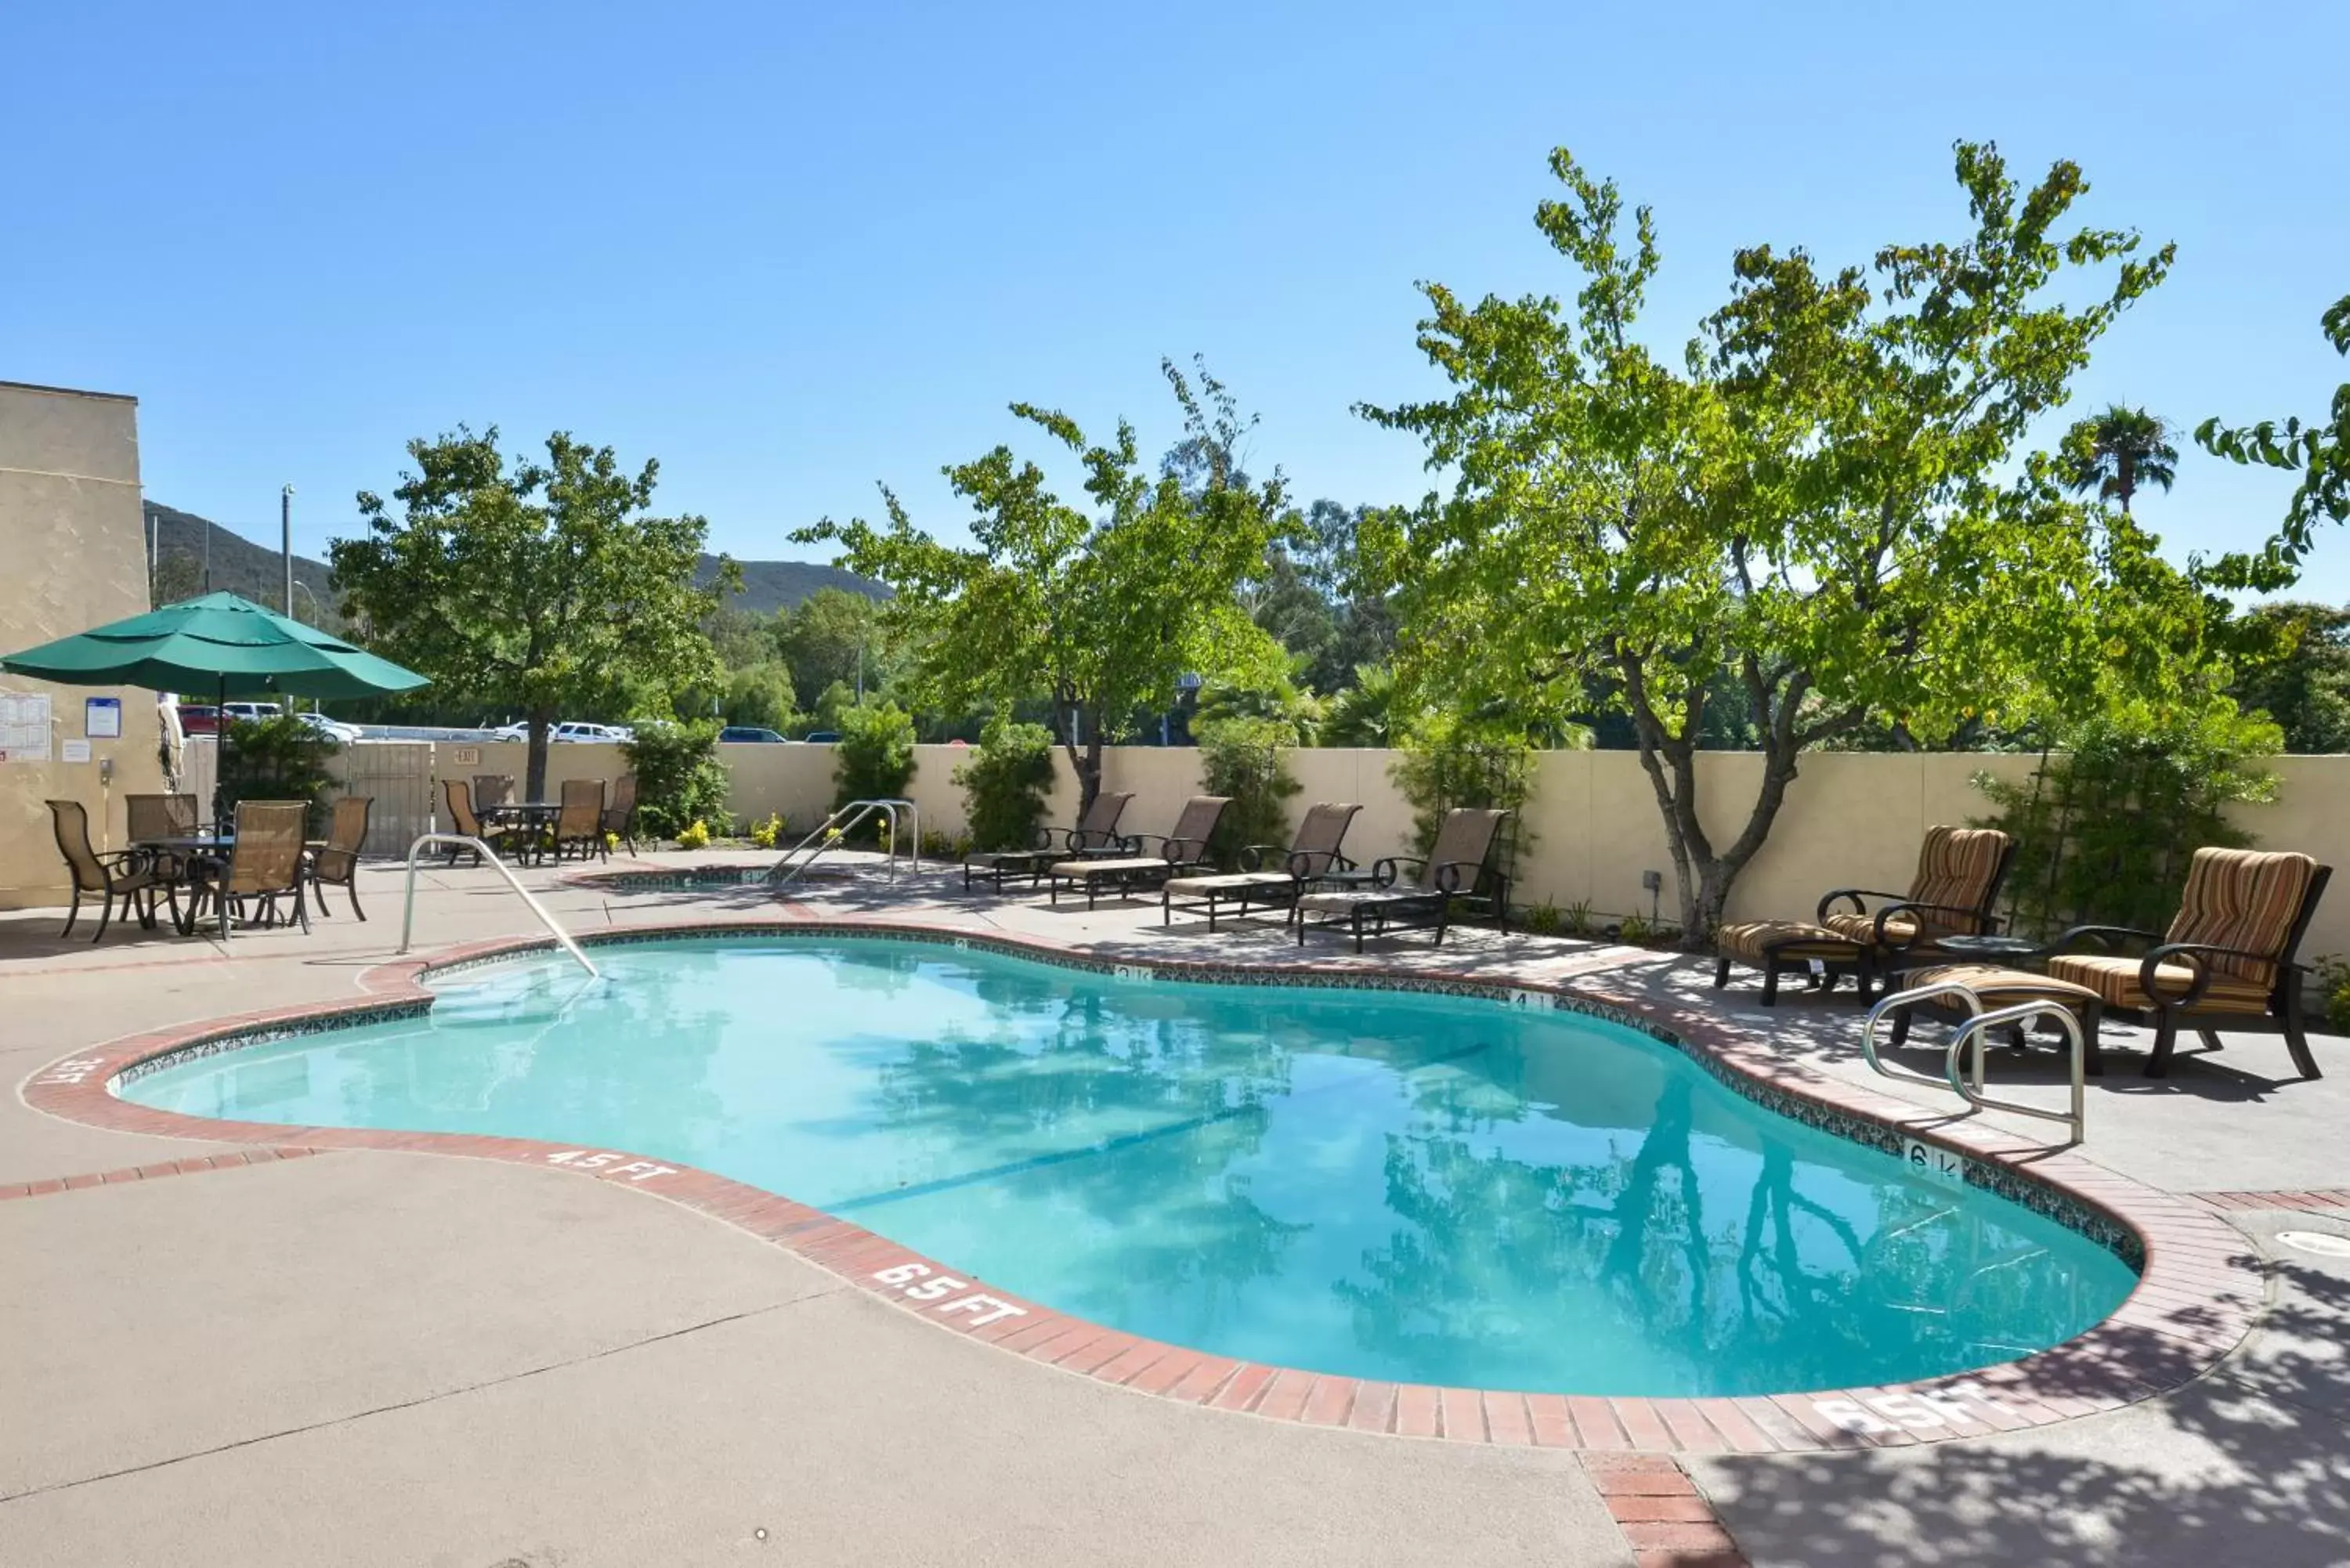 Swimming Pool in Best Western Plus Thousand Oaks Inn